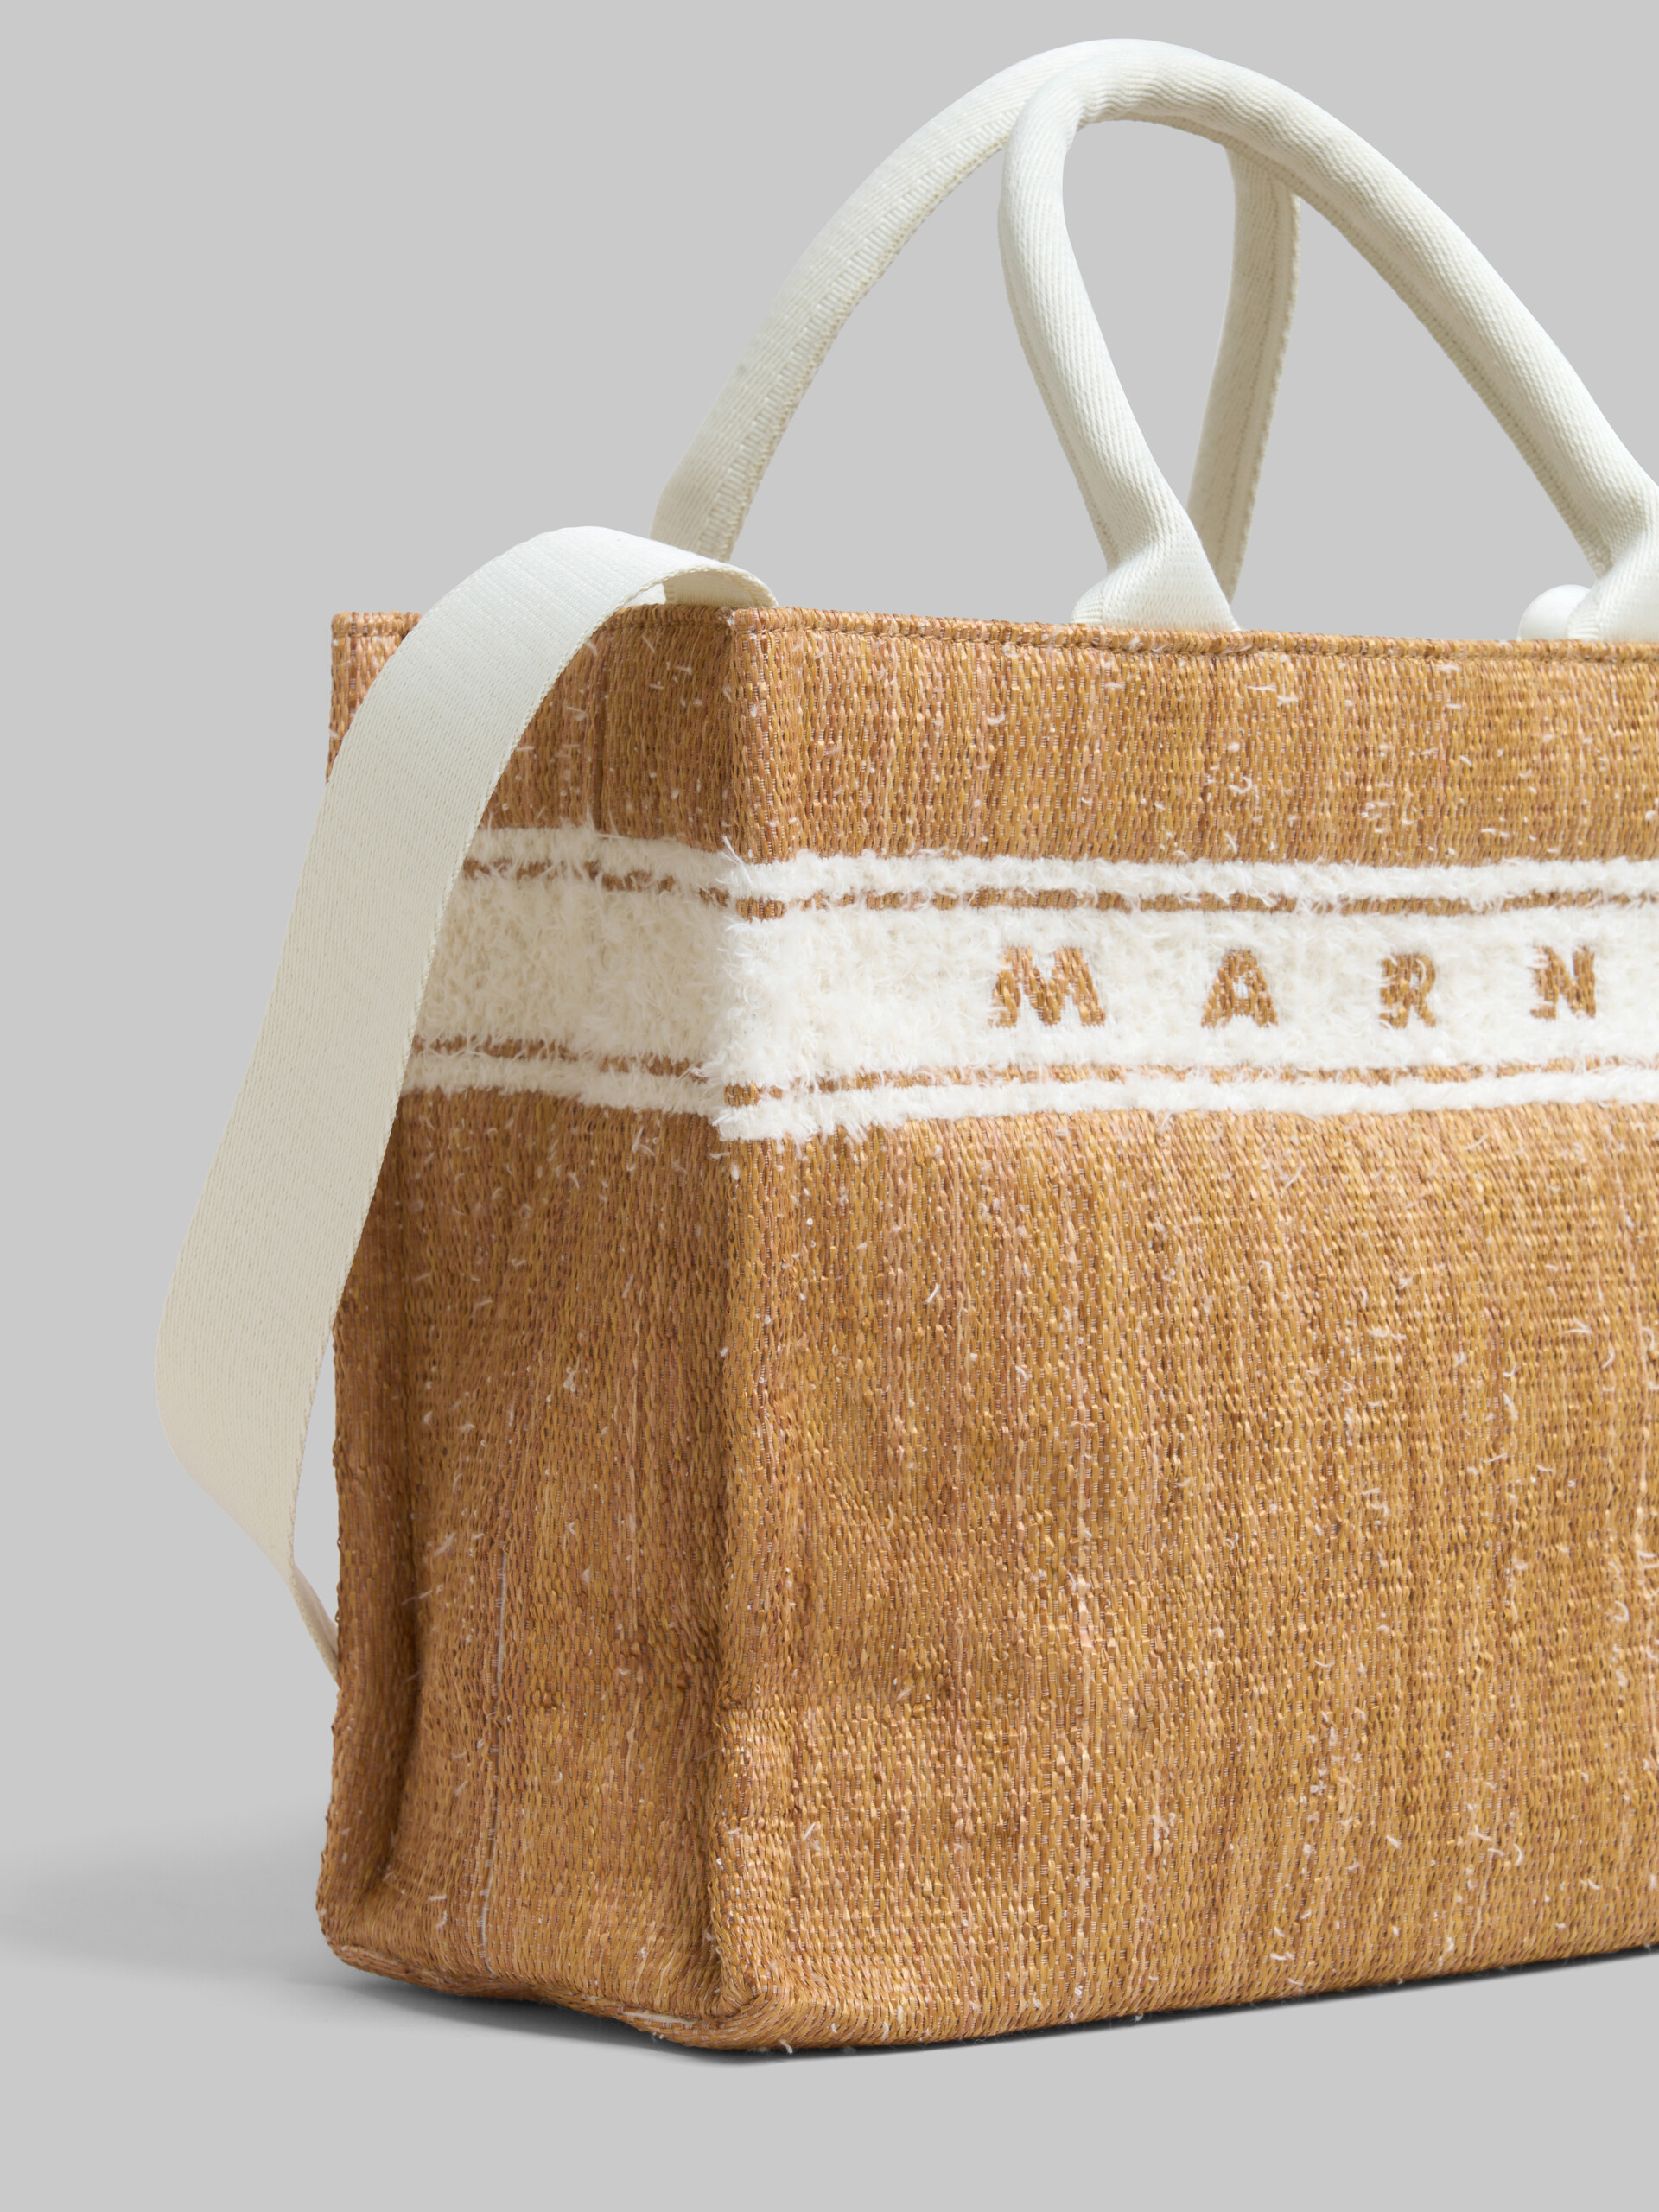 Tote Bag piccola in tessuto effetto rafia écru con logo trapuntato - Borse shopping - Image 5